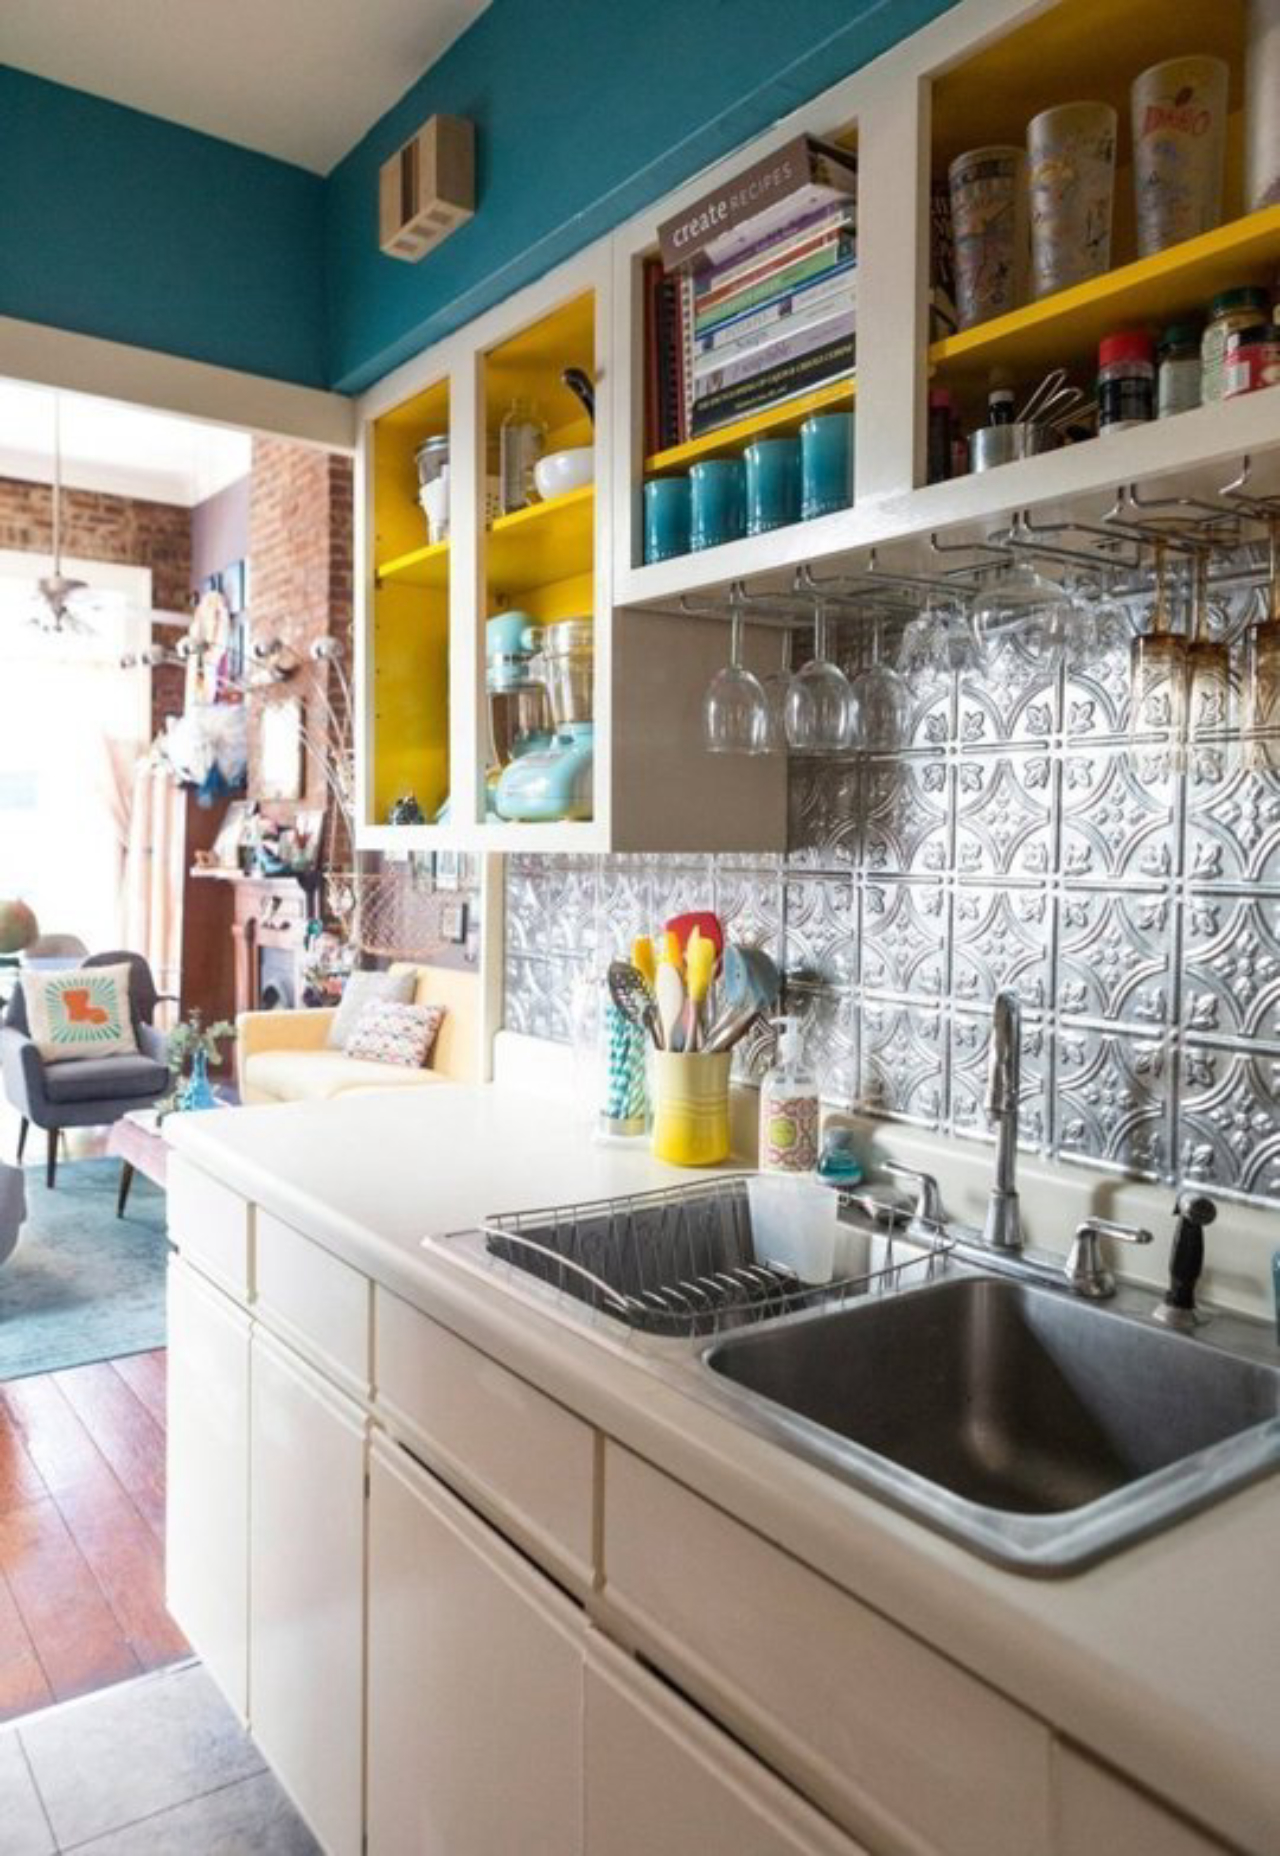 Cozinha descolada com os nichos amarelos em composição com a parede azul.<br>Foto: Reprodução Pinterest.  